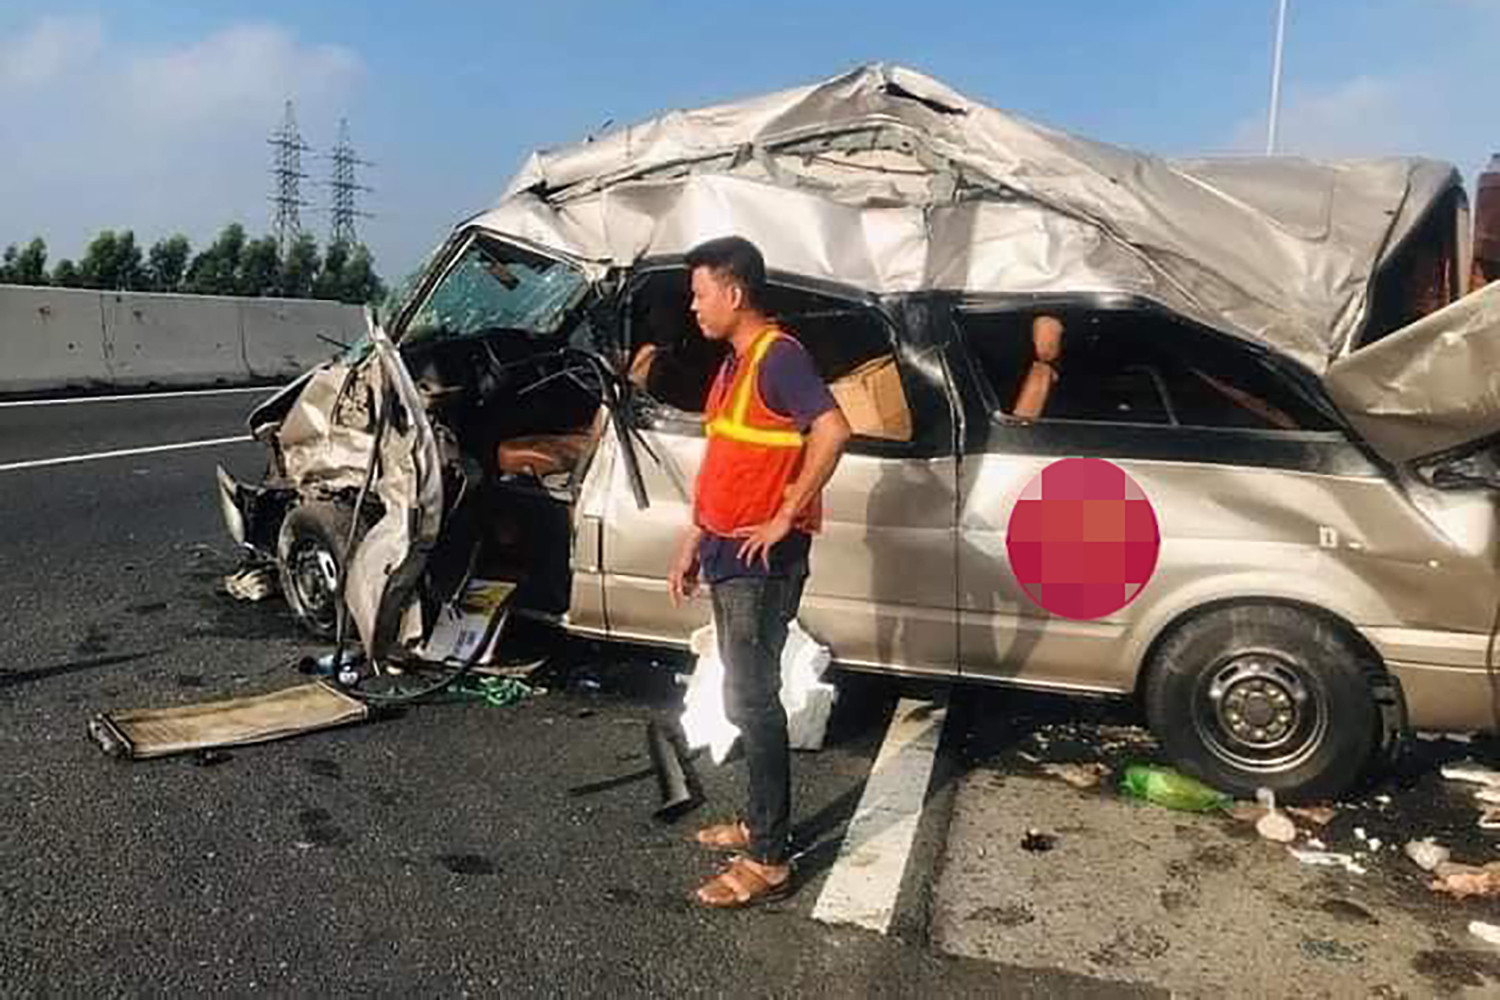 Ôtô bẹp dúm sau cú tông vào hộ lan cao tốc Hà Nội - Hải Phòng - Ảnh 2.